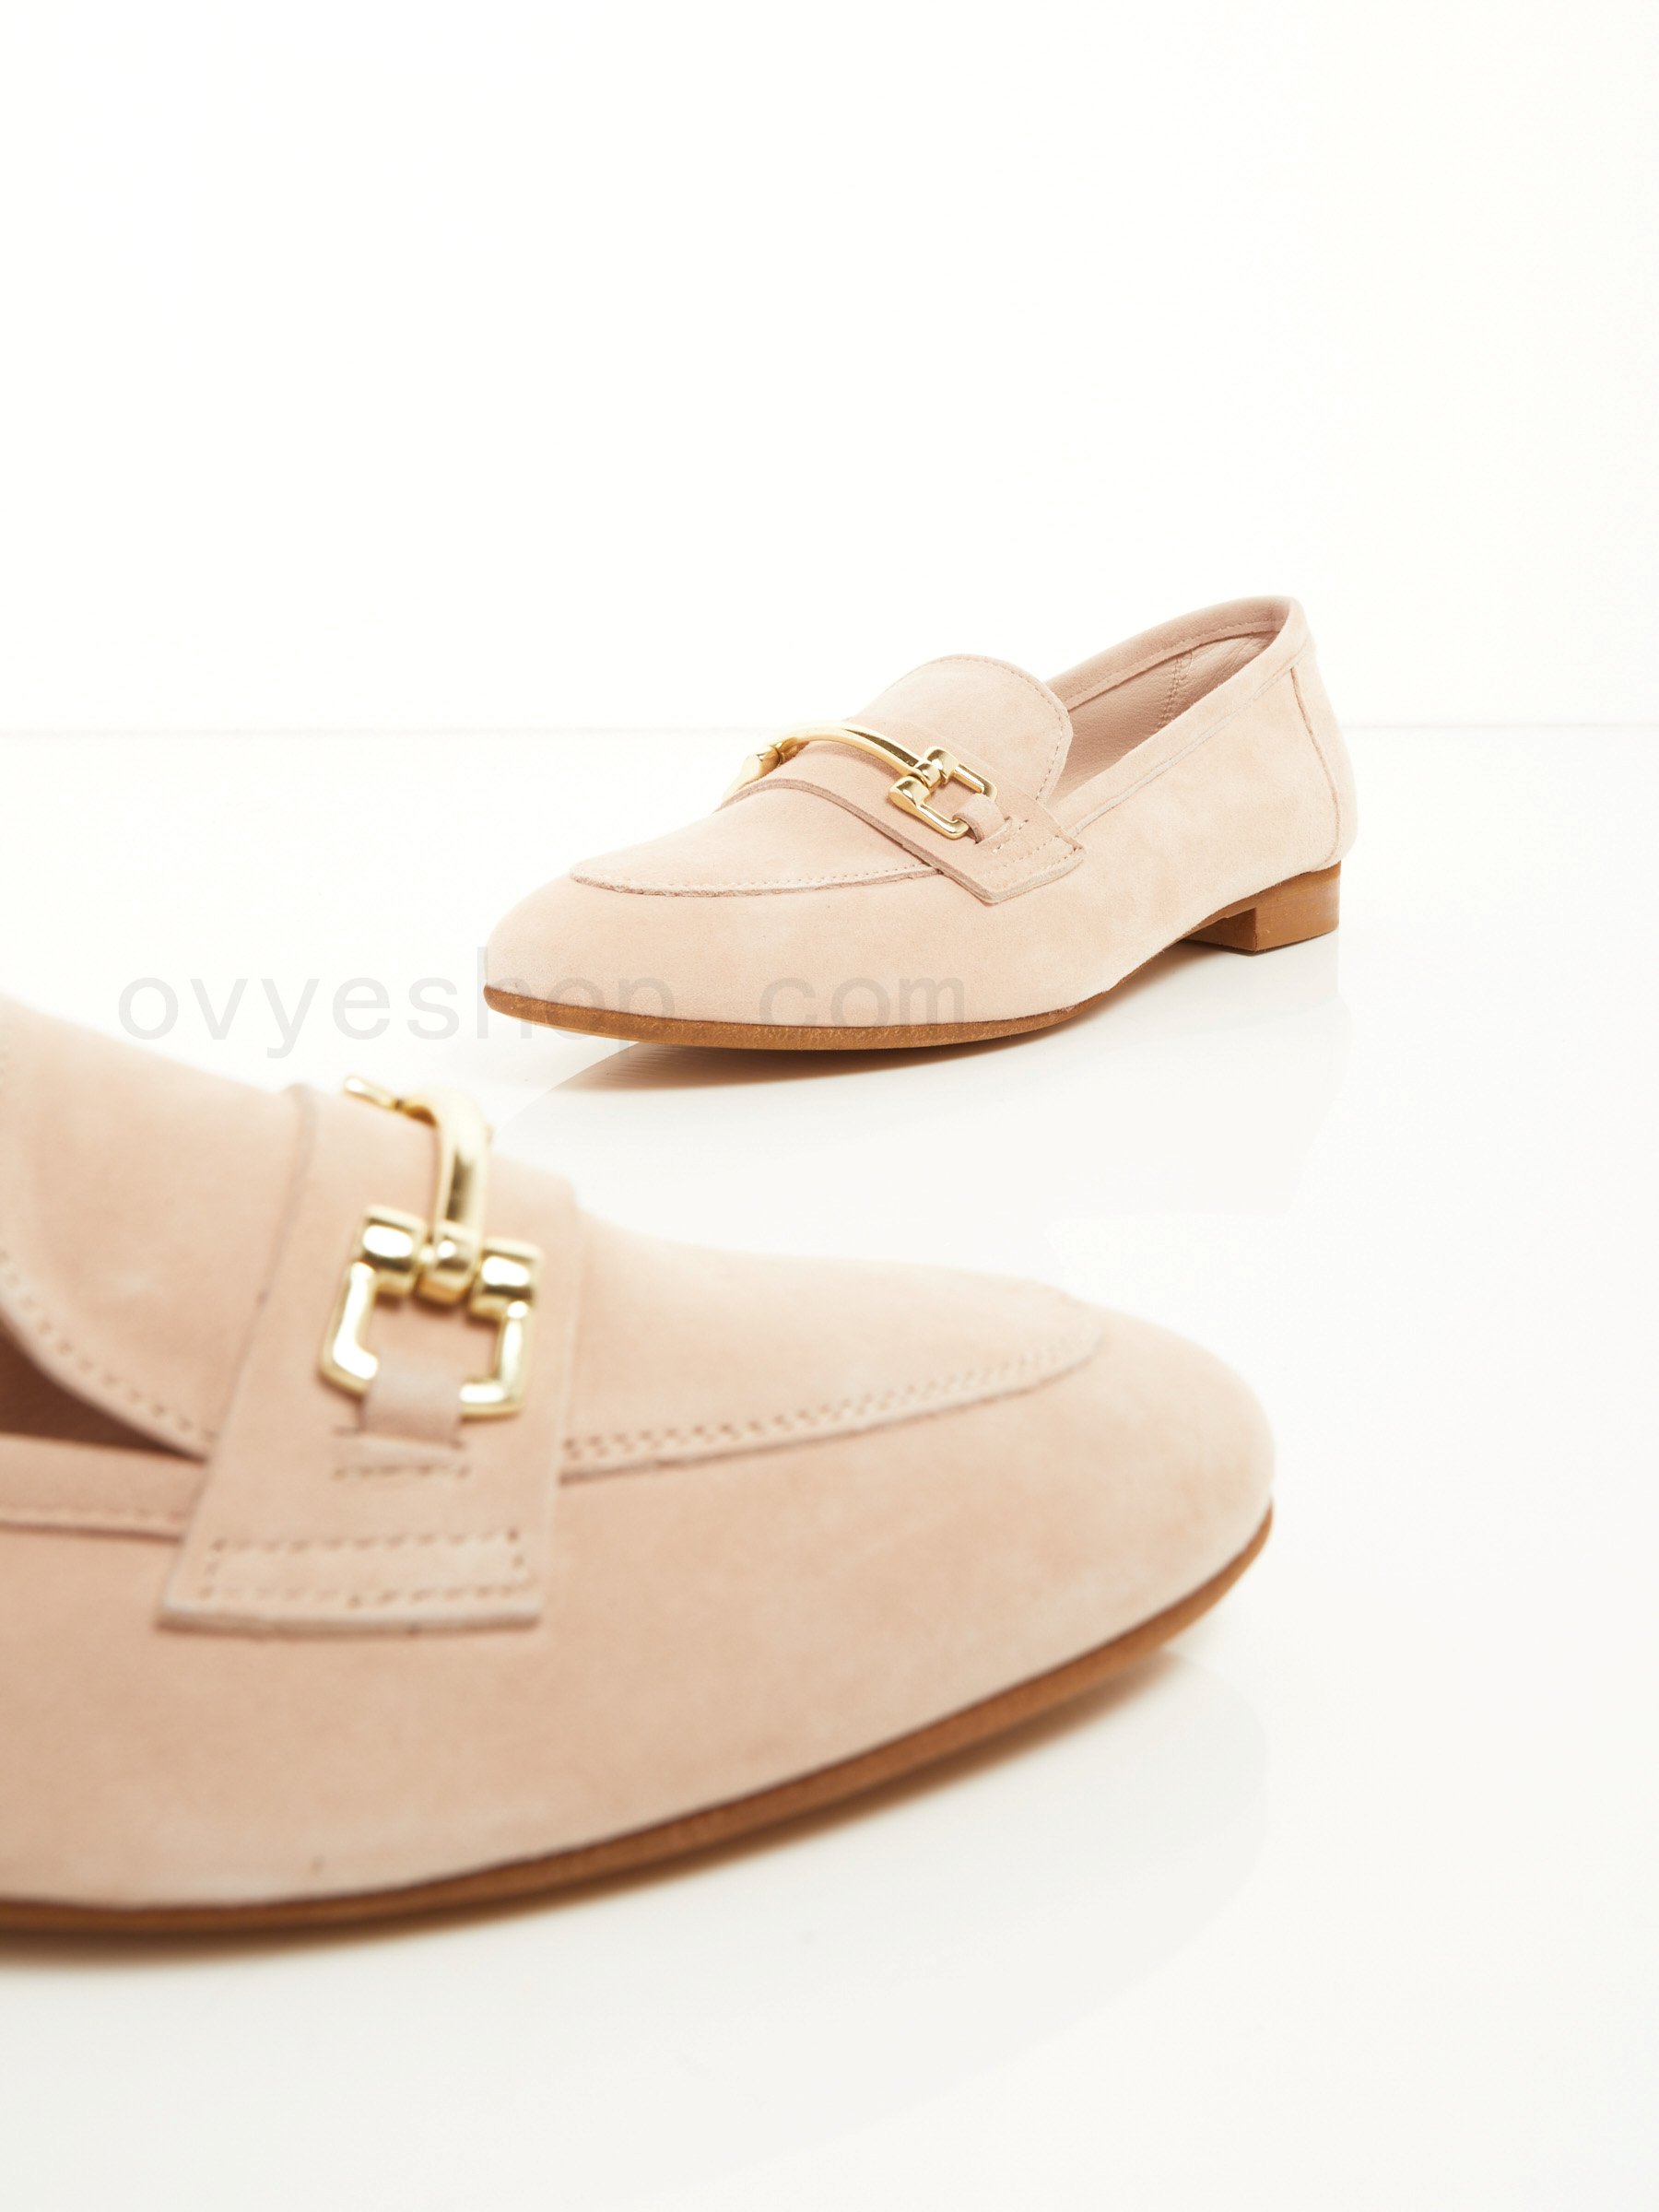 (image for) Negozi Online Suede Loafer F0817885-0630 ovye scarpe shop online